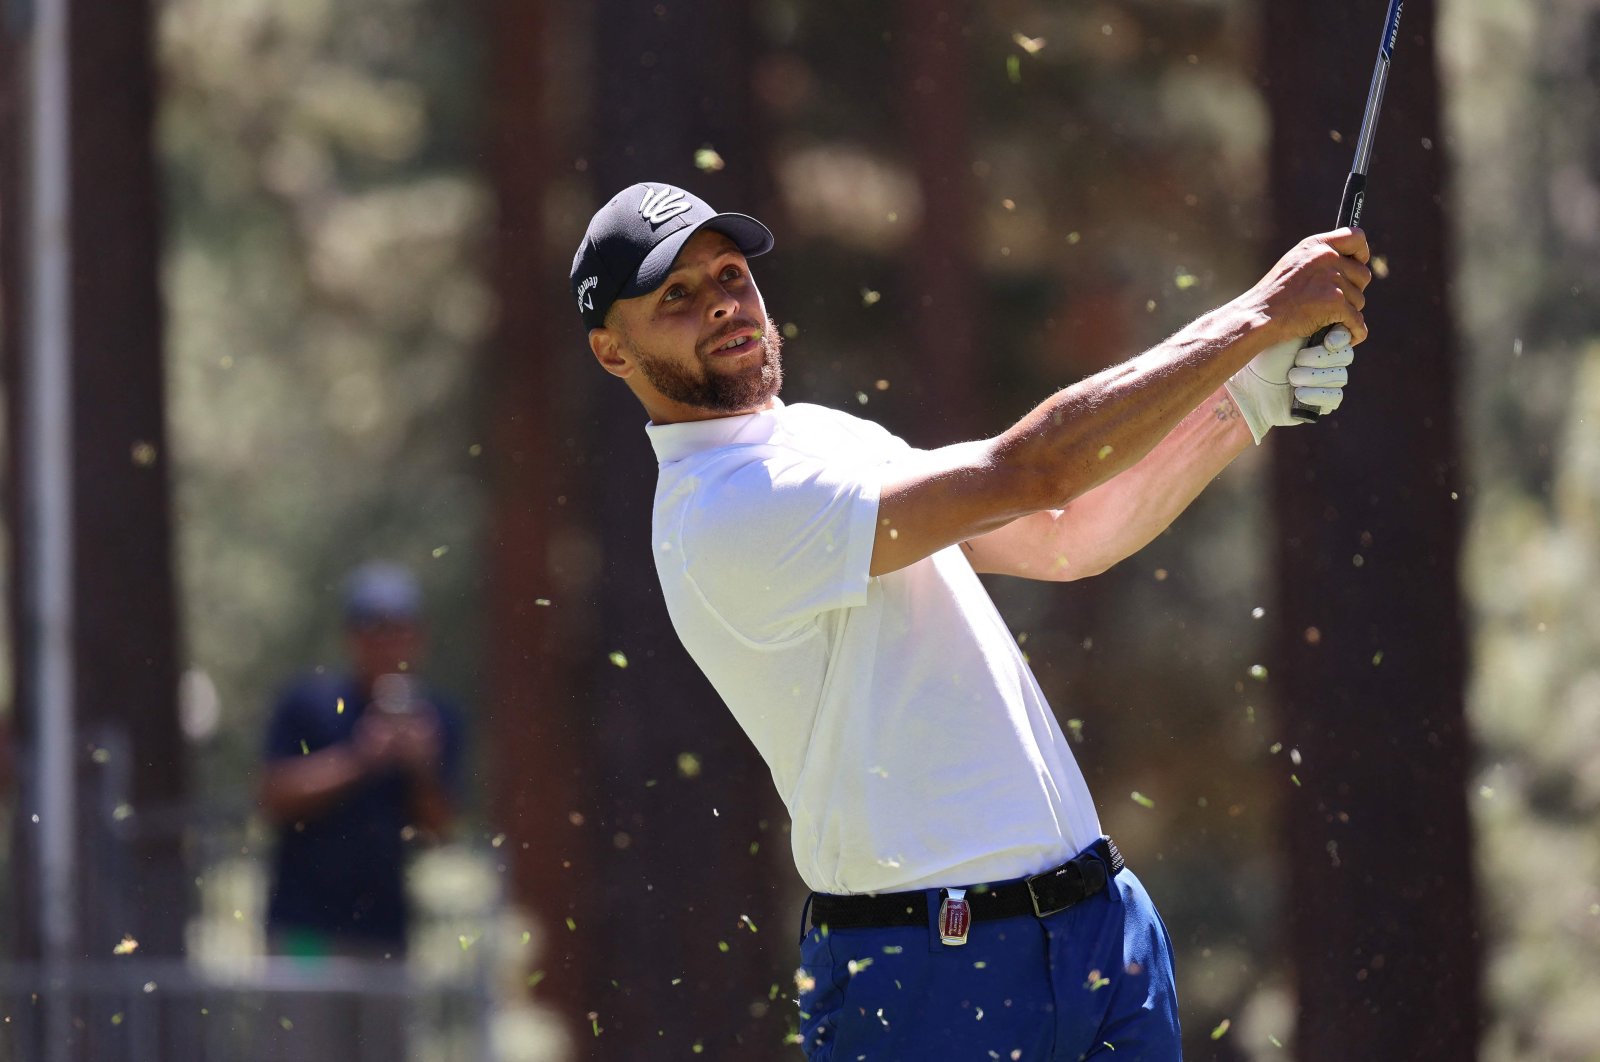 Bintang NBA Curry memamerkan kecakapan menembak dengan golf hole-in-one